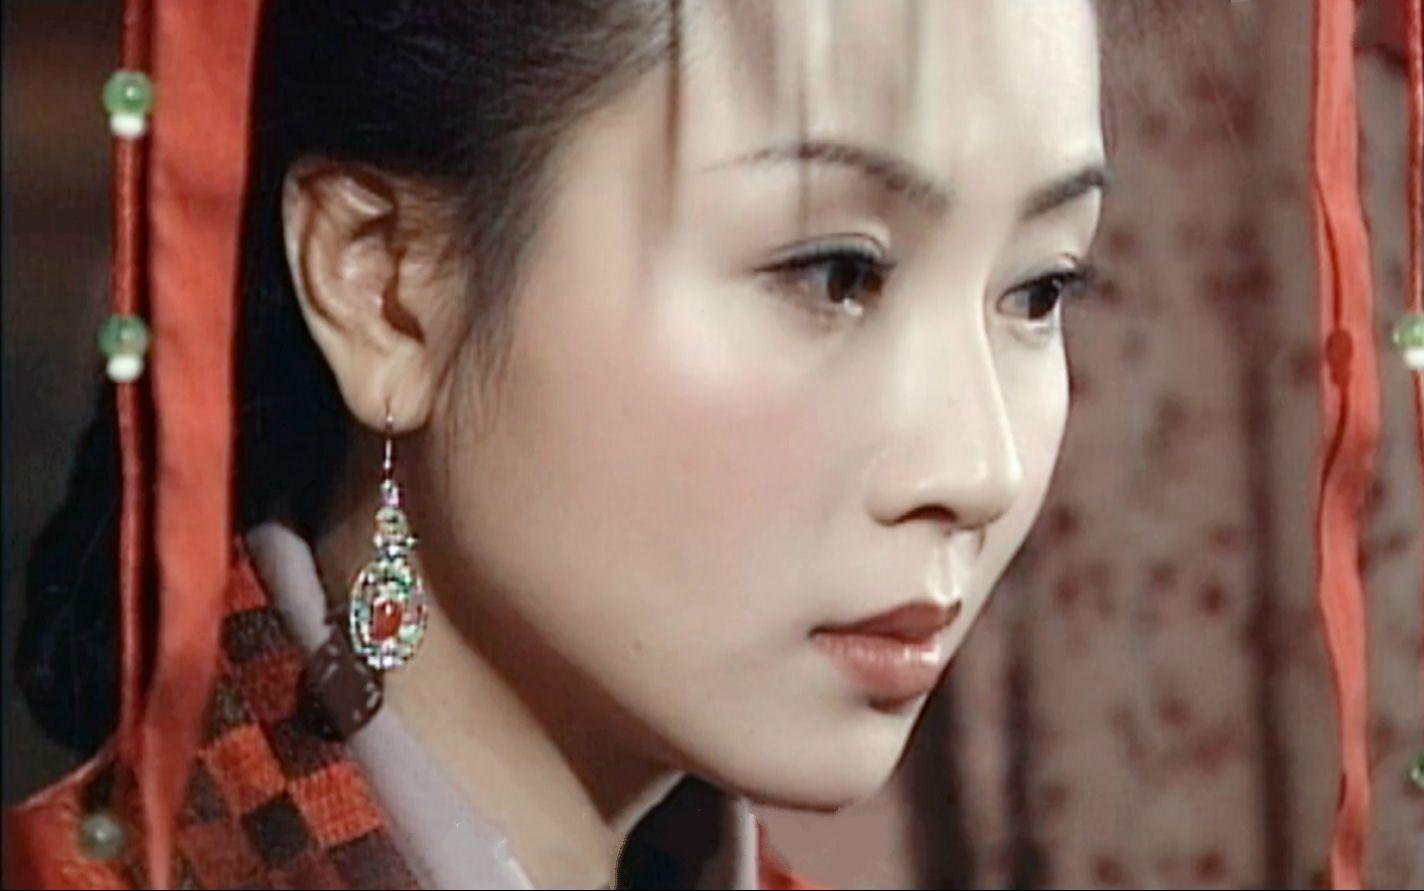 《人龙传说,是有陈浩民和袁洁莹主演的古装剧